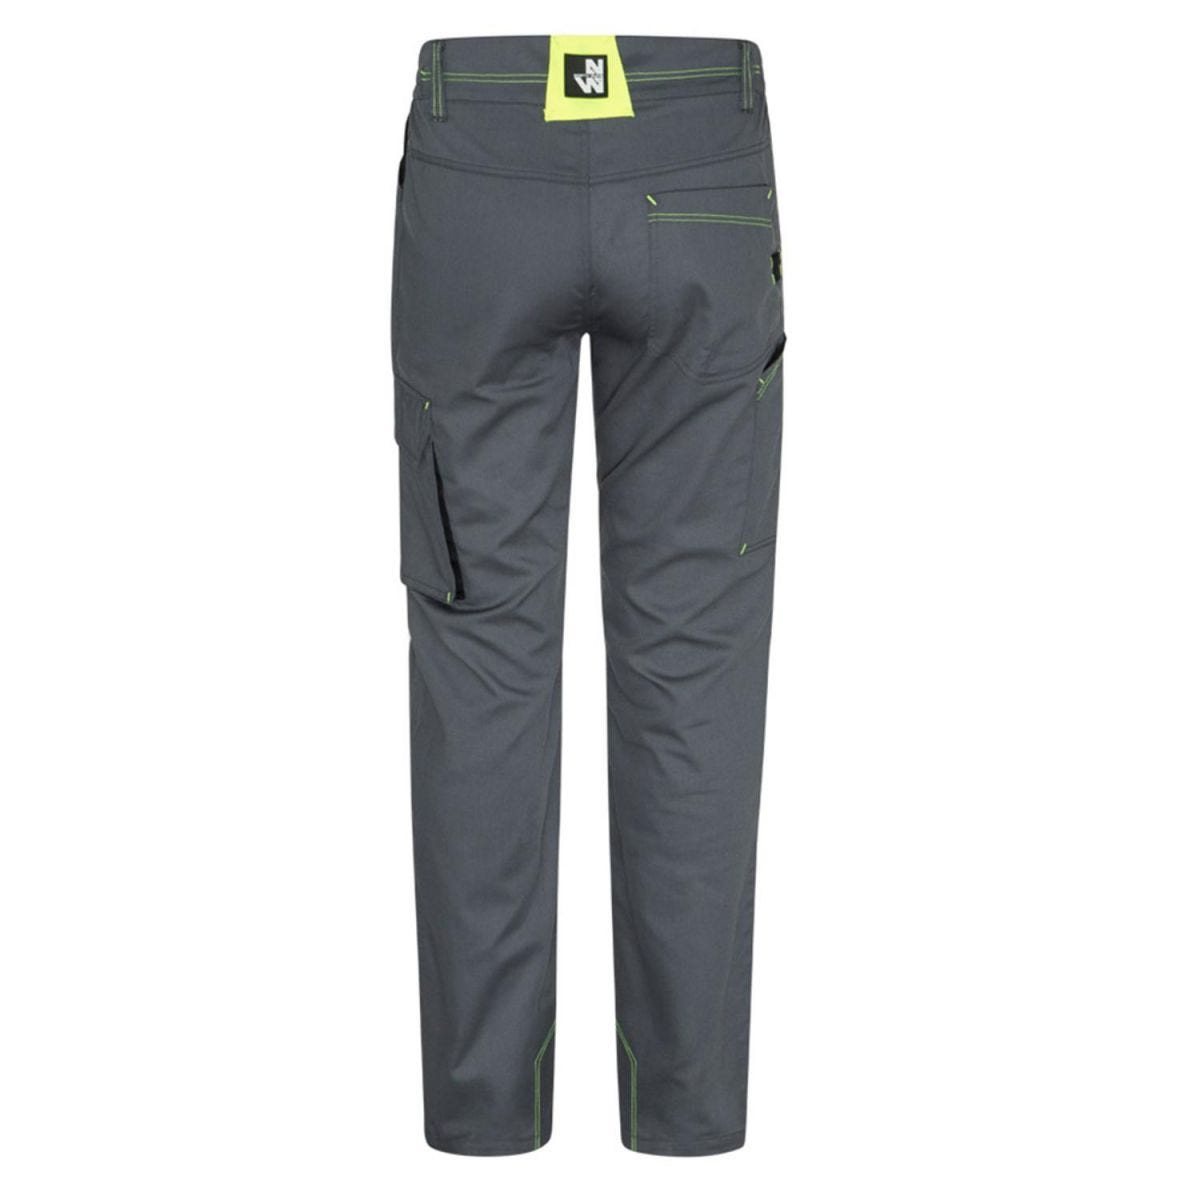 Pantalon Marlow gris et jaune fluo - North Ways - Taille 2XL 2